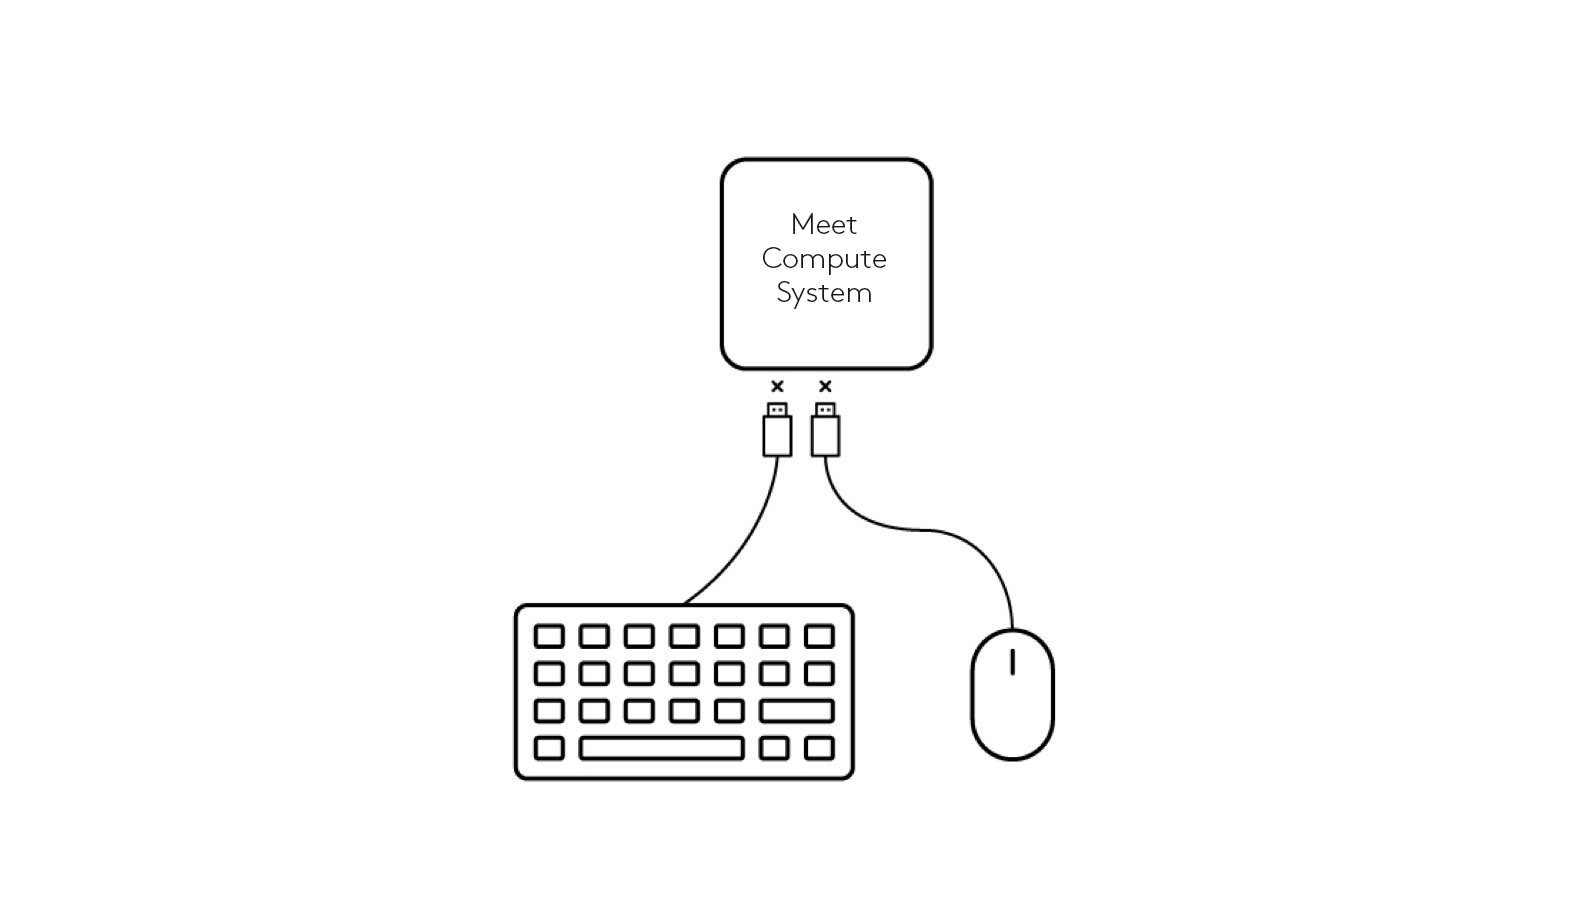 Schéma de déconnexion du clavier et de la souris au système Meet Compute